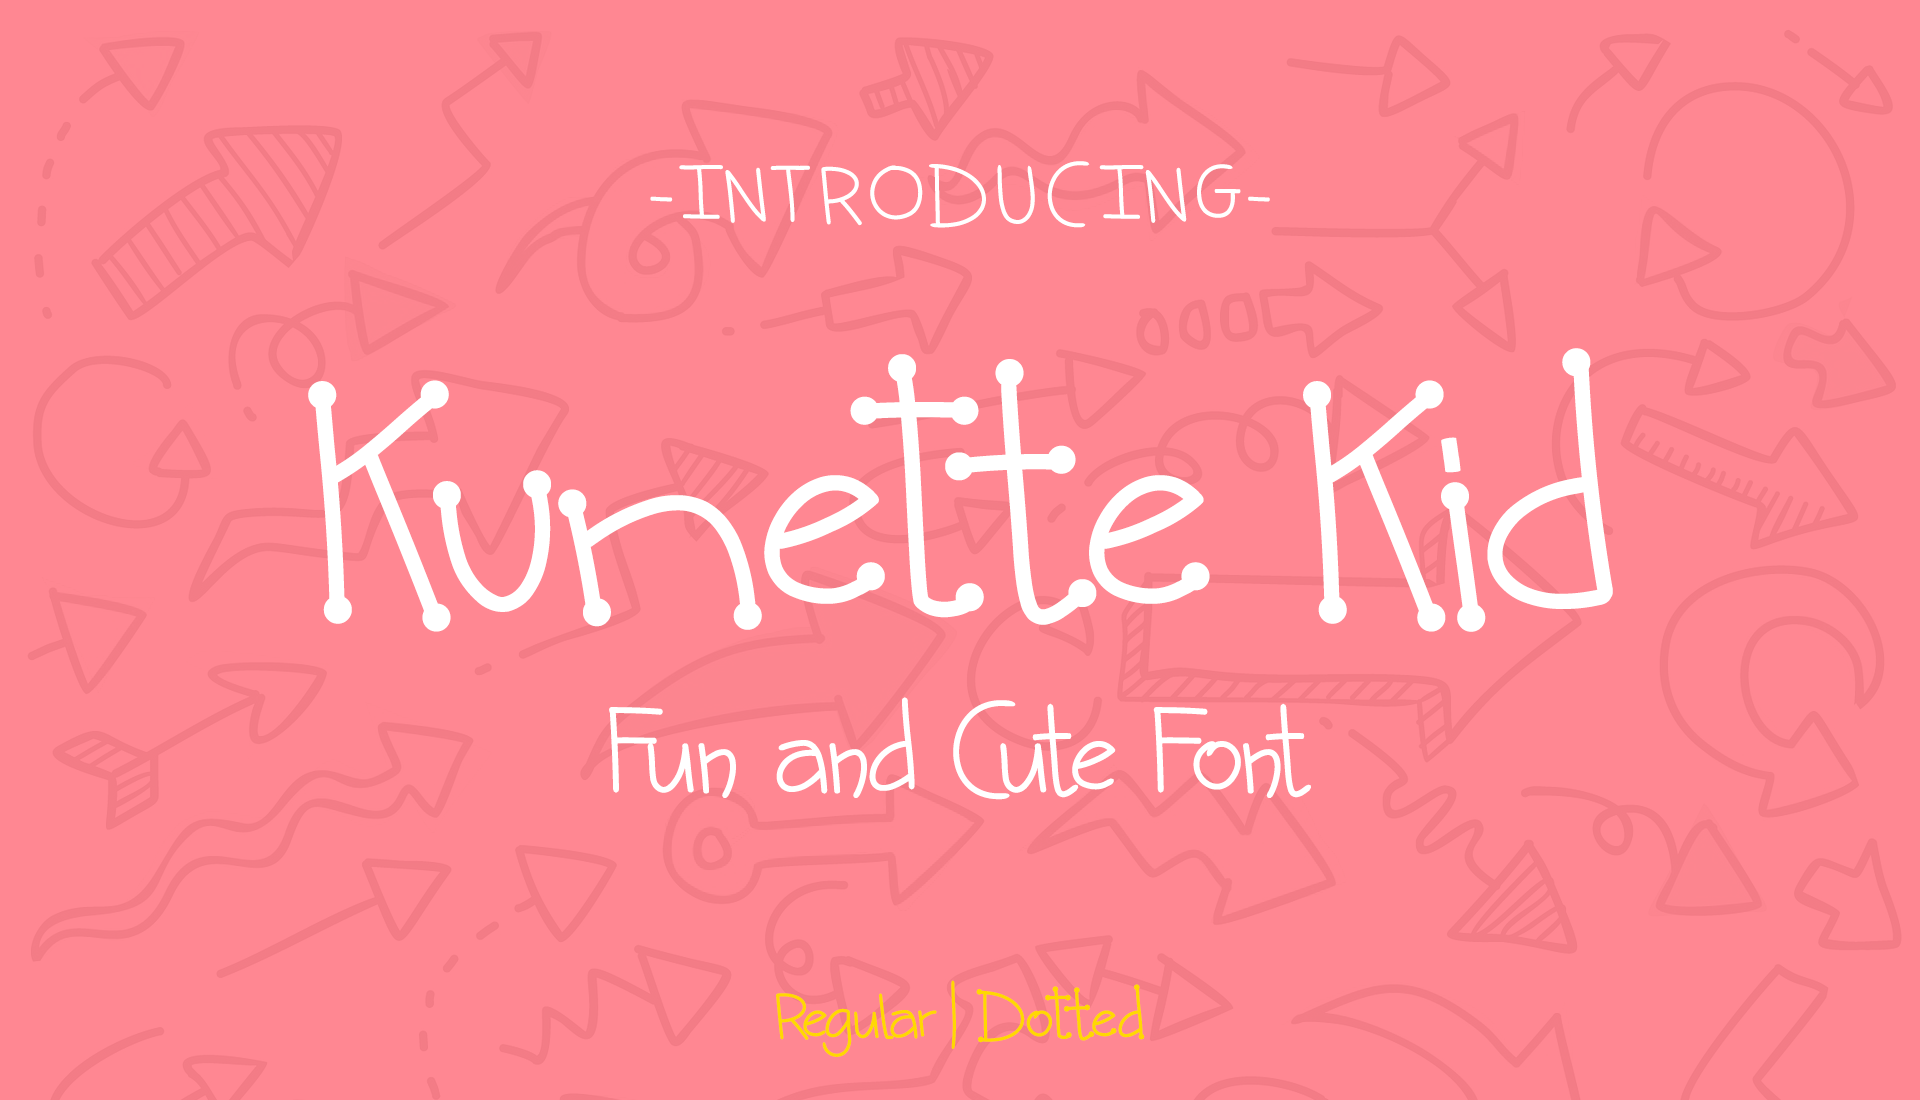 Kunette Kid Dot font